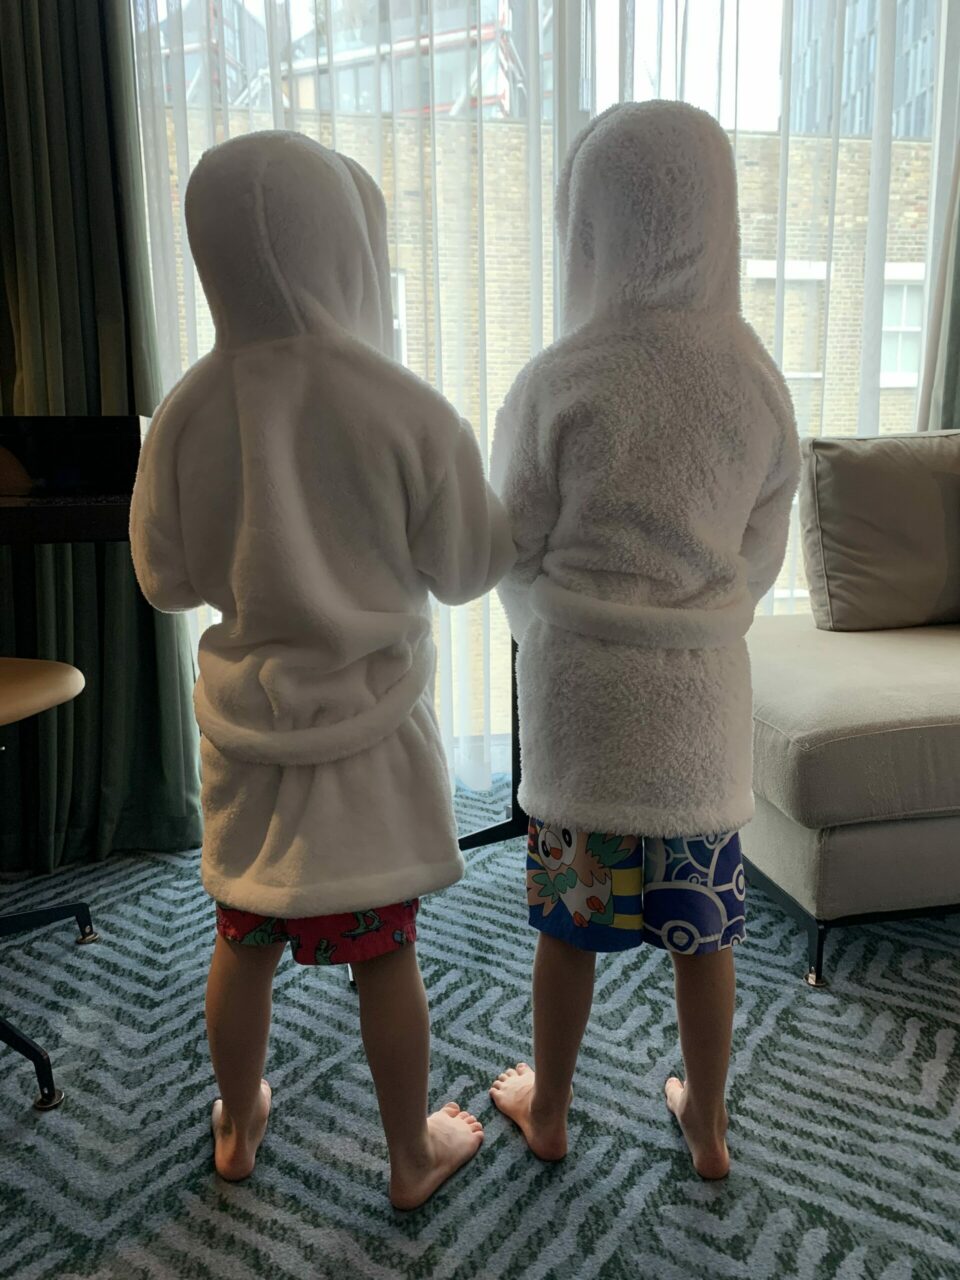 Children in bathrobes 